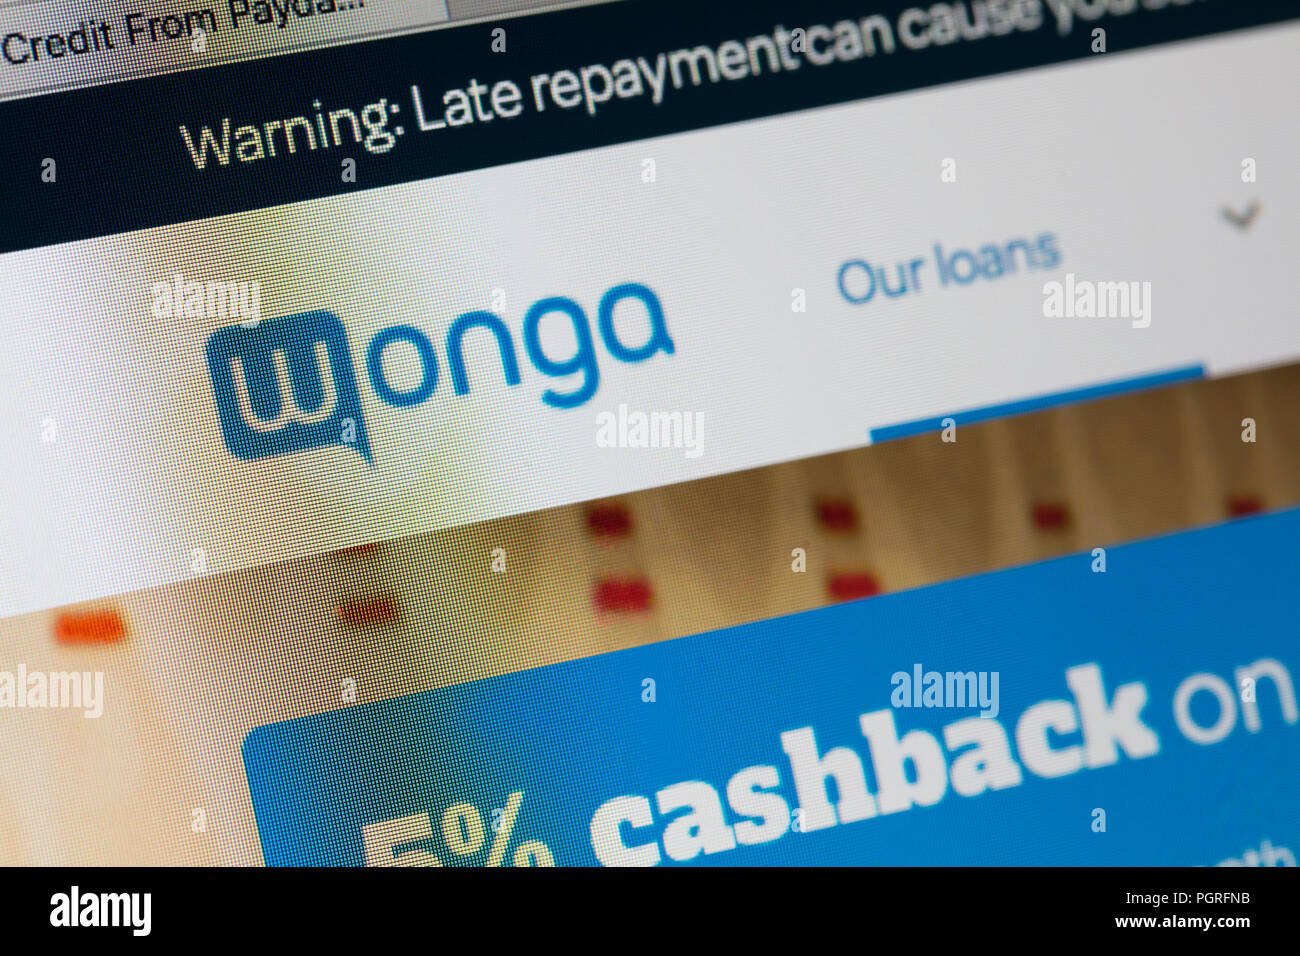 LONDON, Regno Unito - 28 agosto 2018: Wonga payday mutuante logo sullo schermo di un computer. Wonga è un payday loan company offrendo a breve termine e ad alto costo del credito. Foto Stock